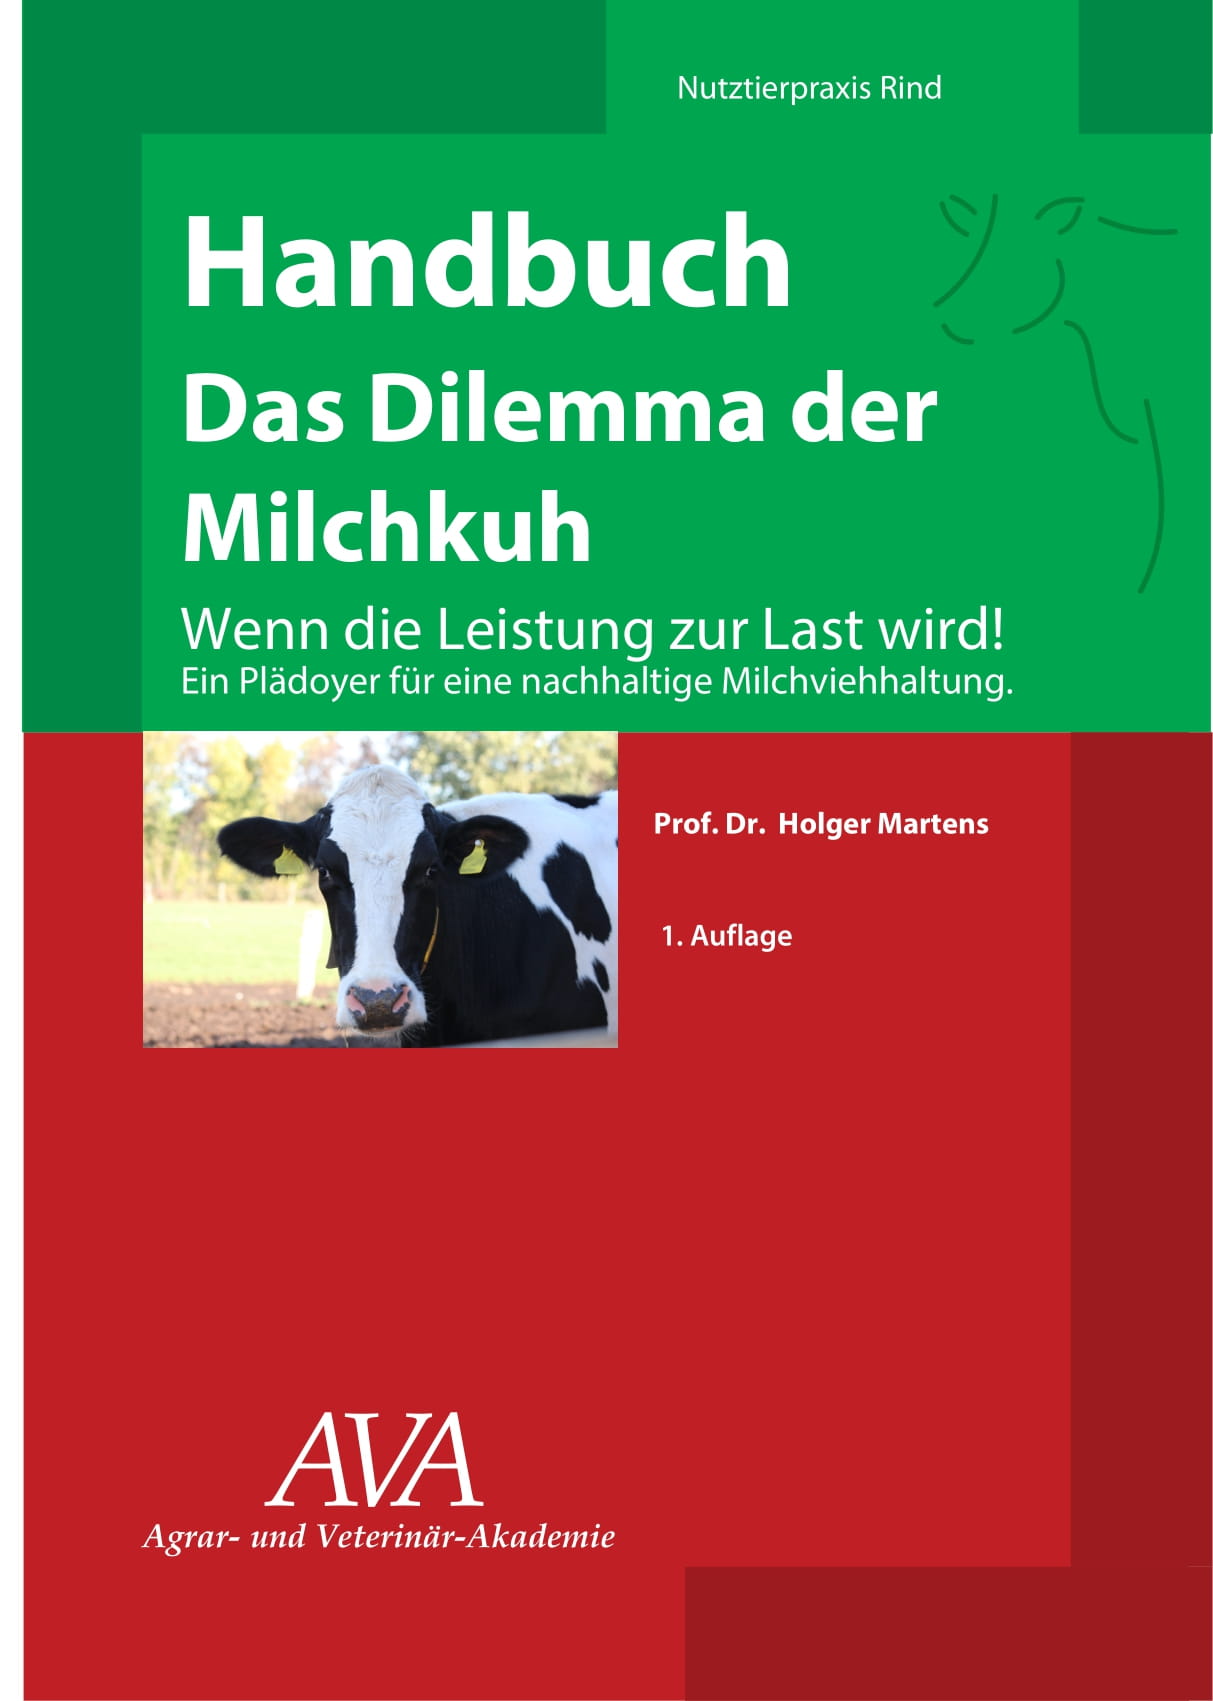 Berlin-News.NET - Berlin Infos & Berlin Tipps | das 110-seitige Buch sollte jeder Tierarzt, Landwirt, Berater und Fach-Studierende lesen